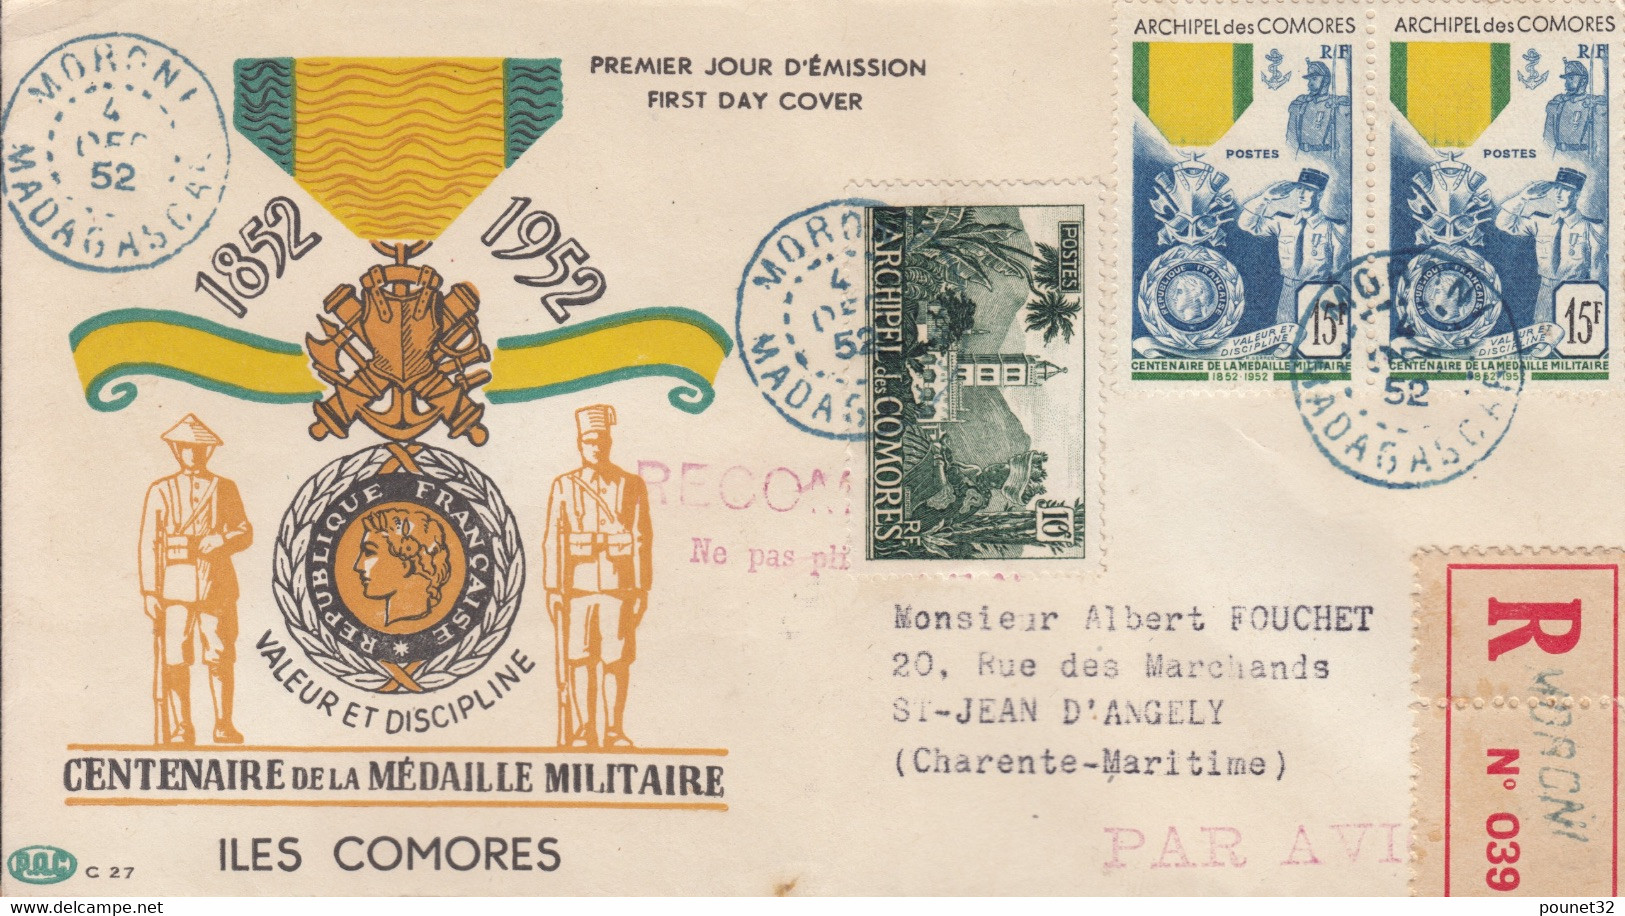 COMORES : CENTENAIRE MEDAILLE MILITAIRE RARE PAIRE N° 12 SUR ENVELOPPE 1ER JOUR EN RECOMMANDE - Covers & Documents